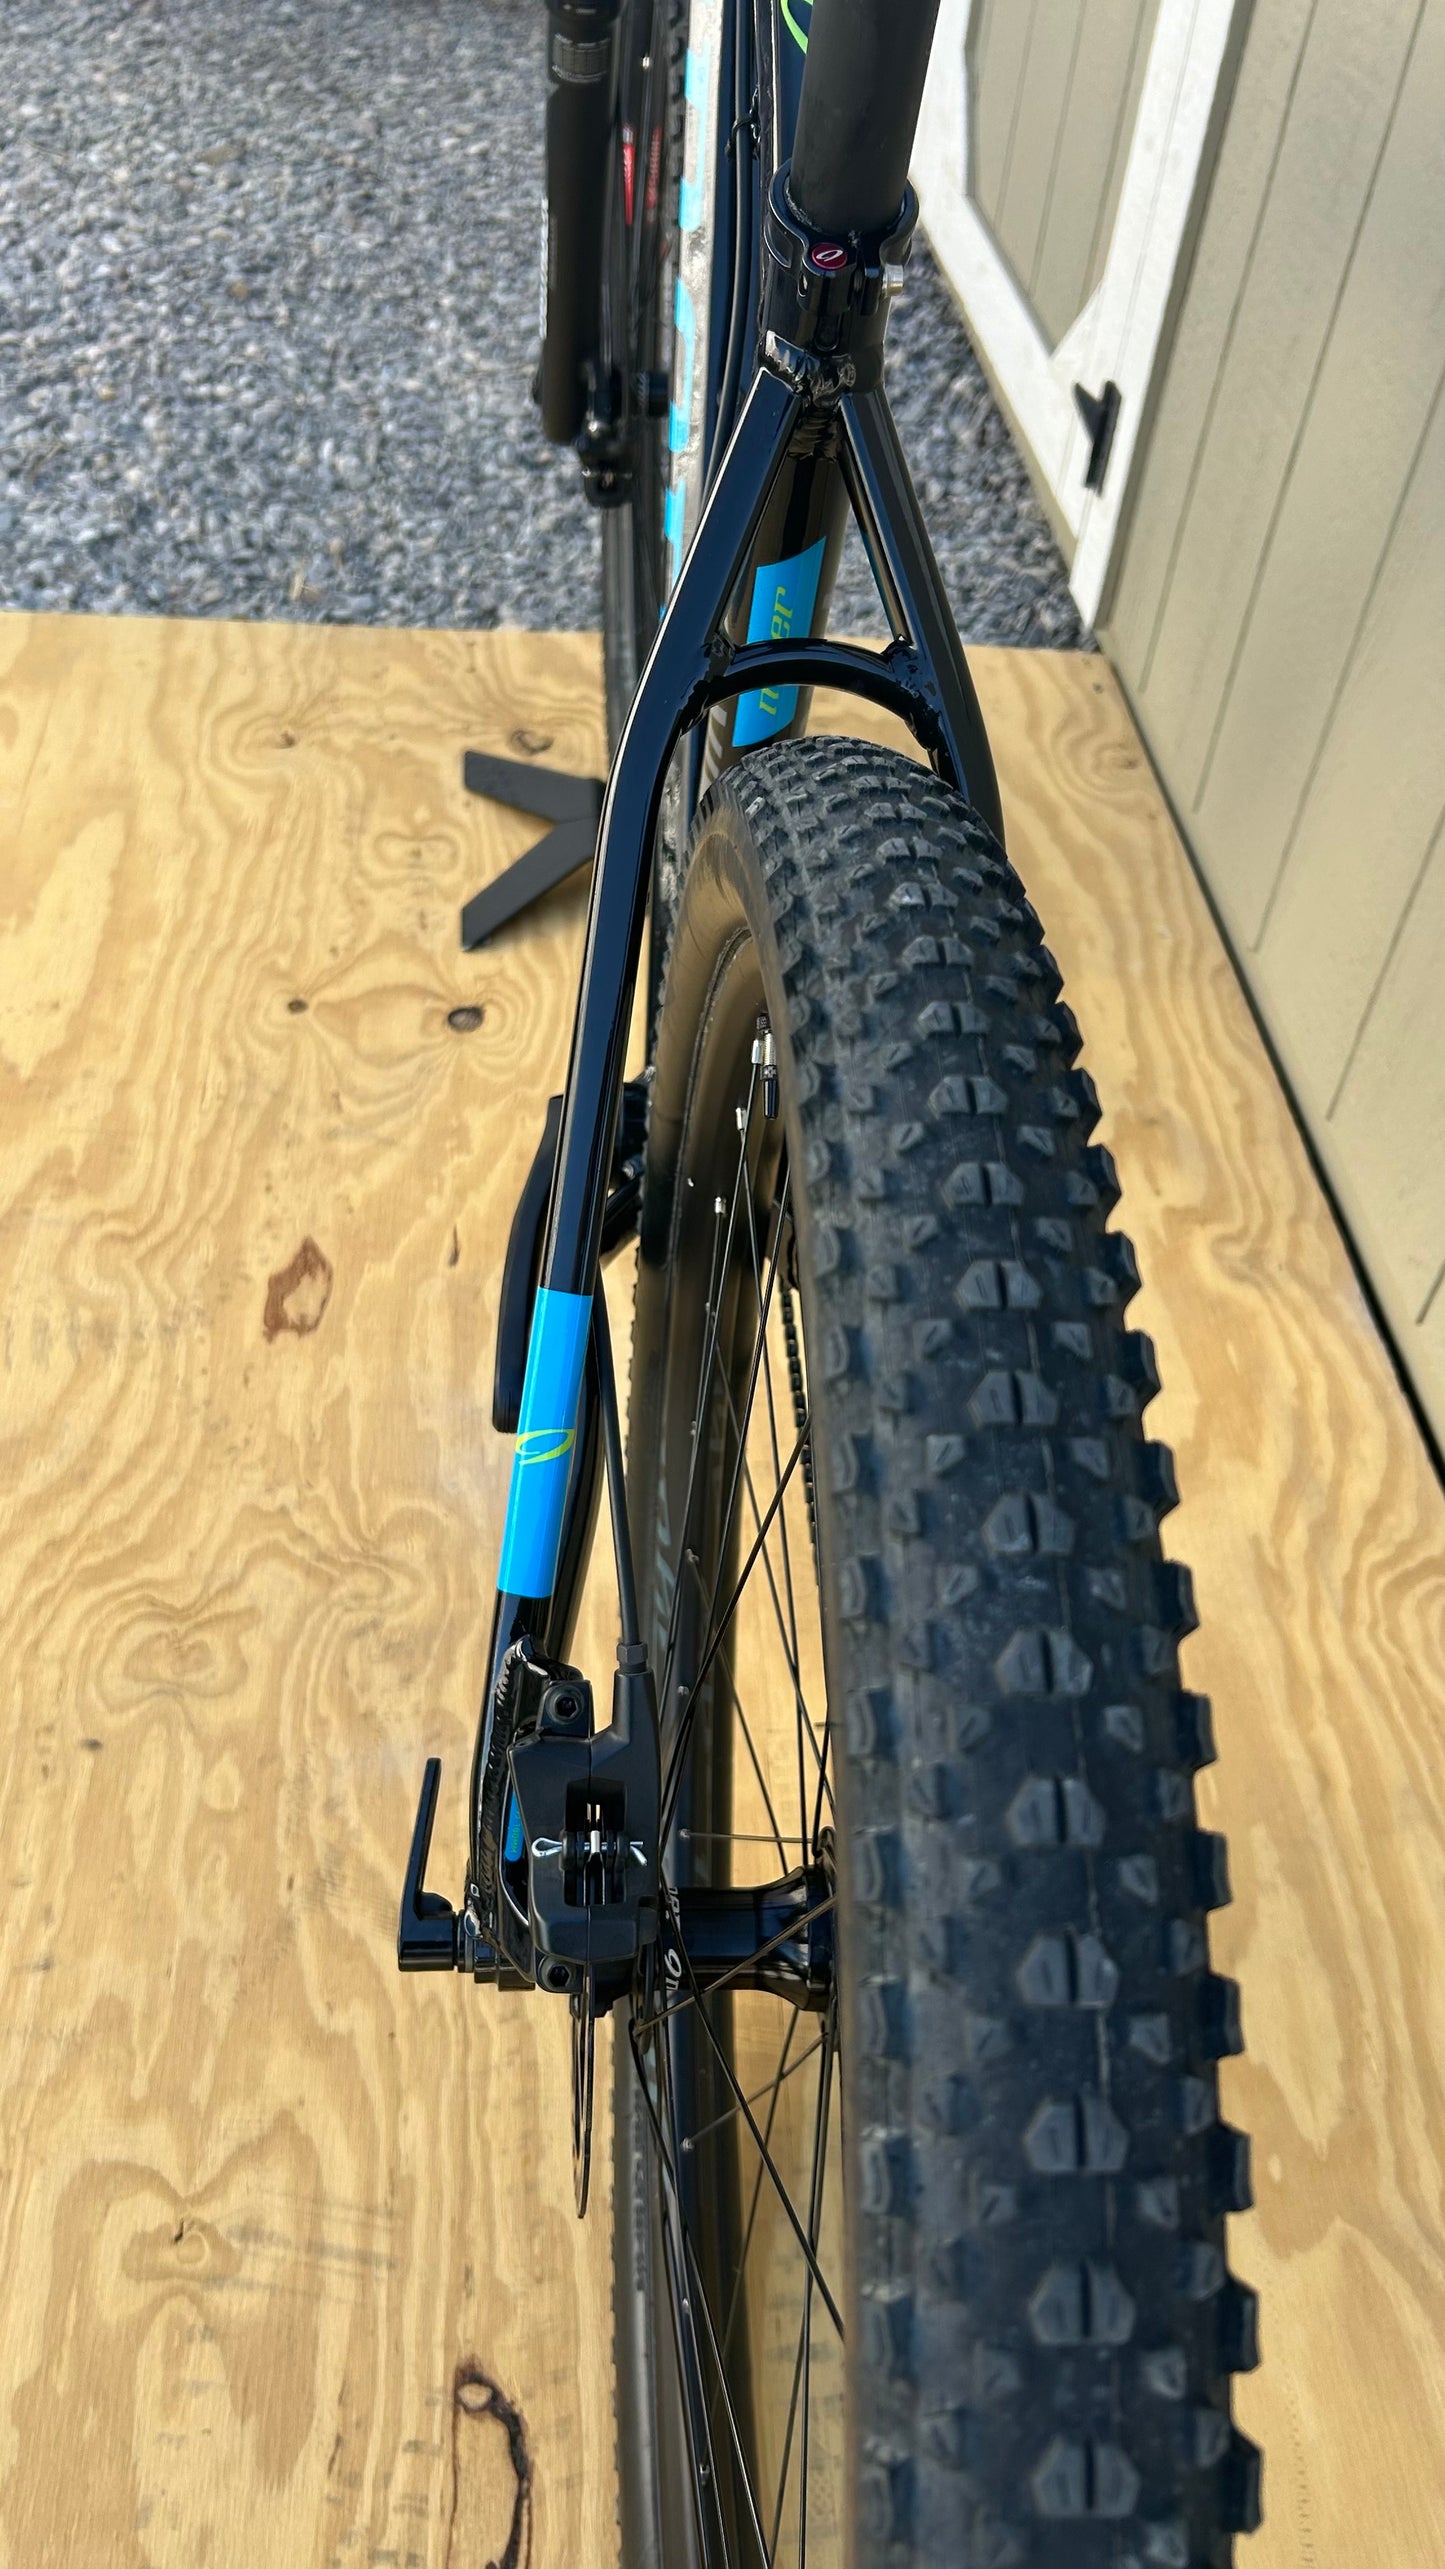 2019 Niner Air 9 Single Speed Large Mountain Bike Black/Blue